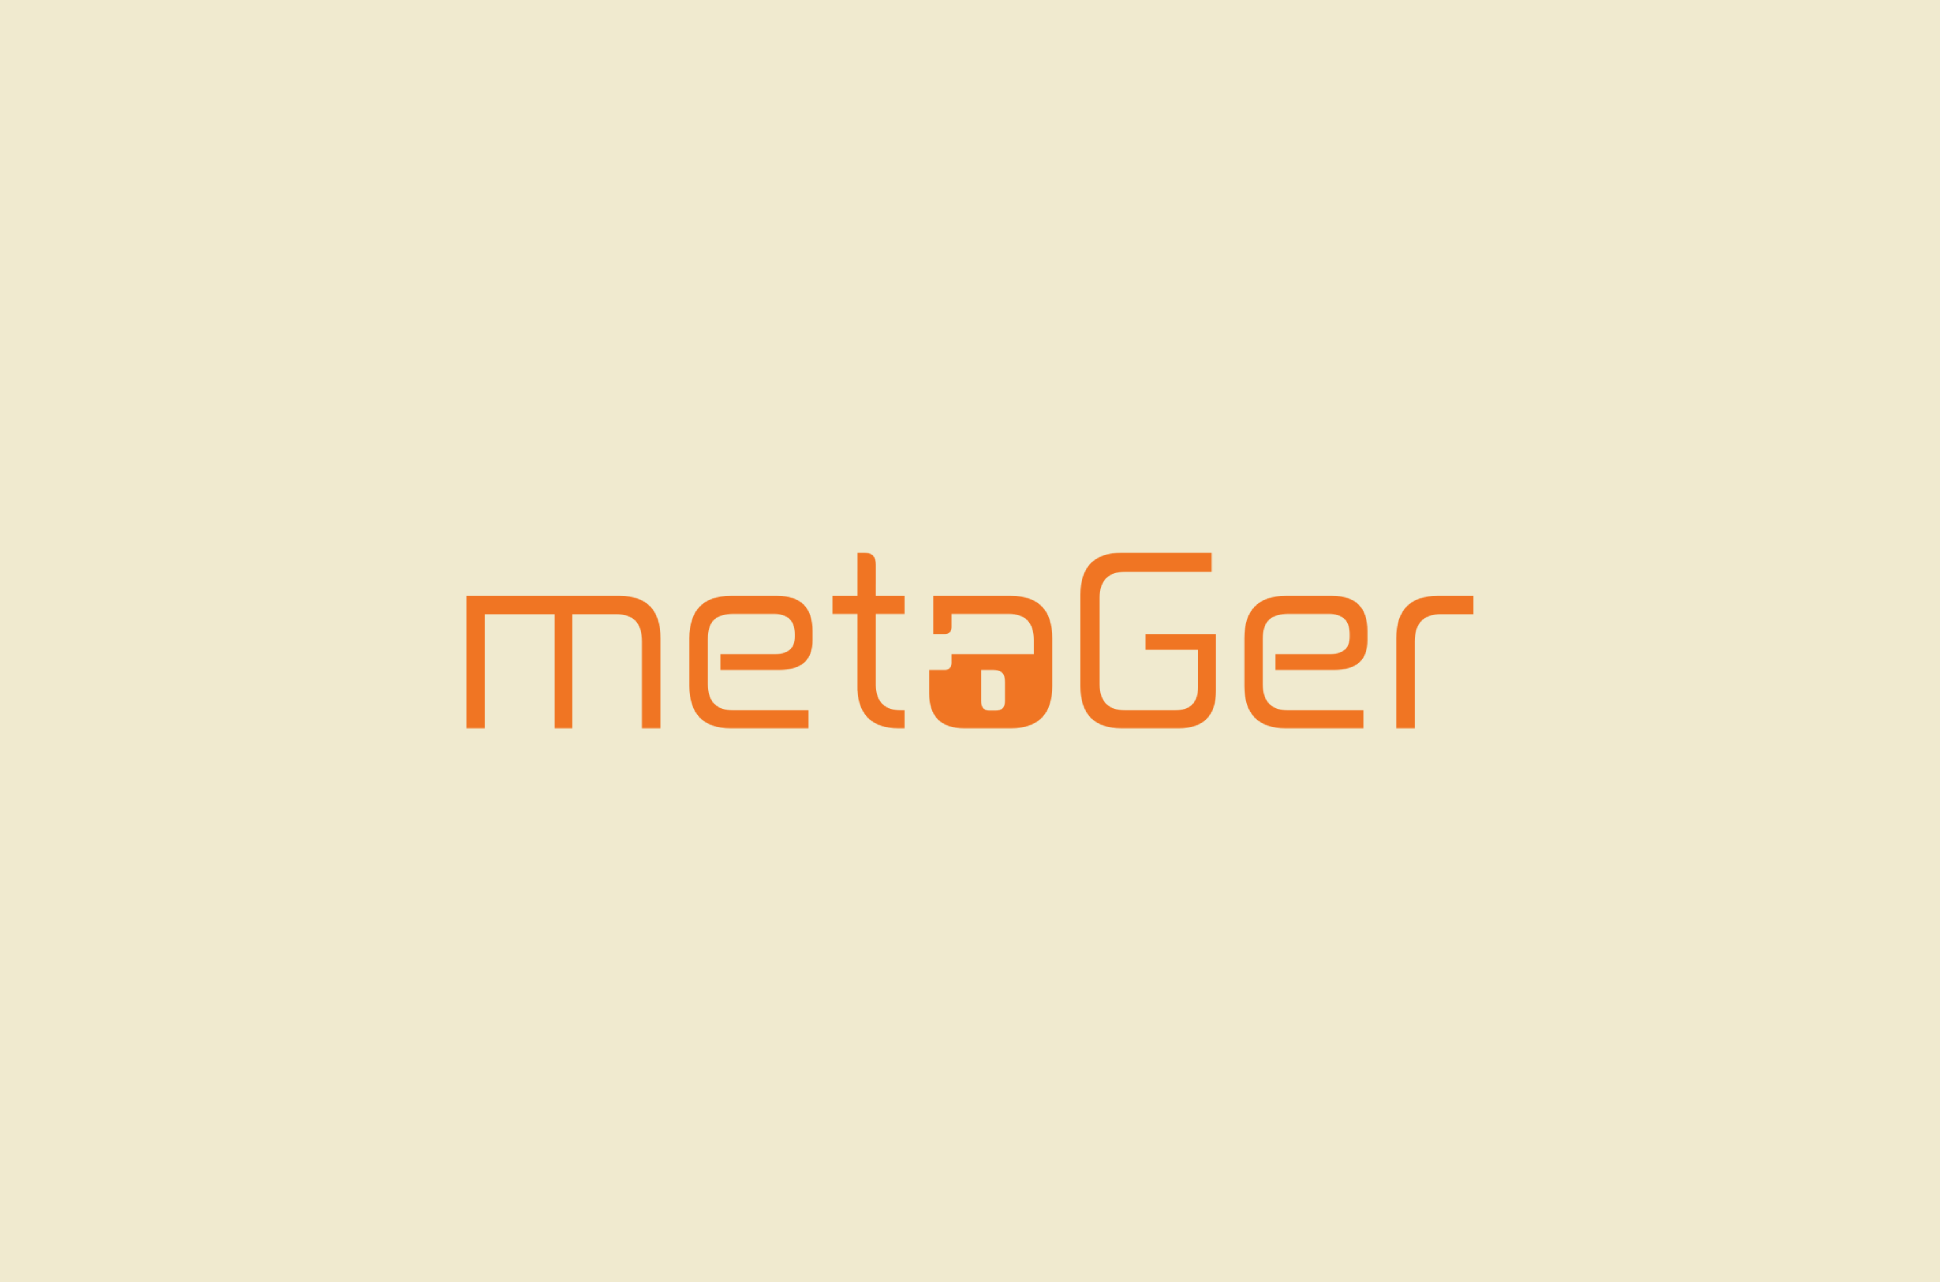 MetaGer logo.